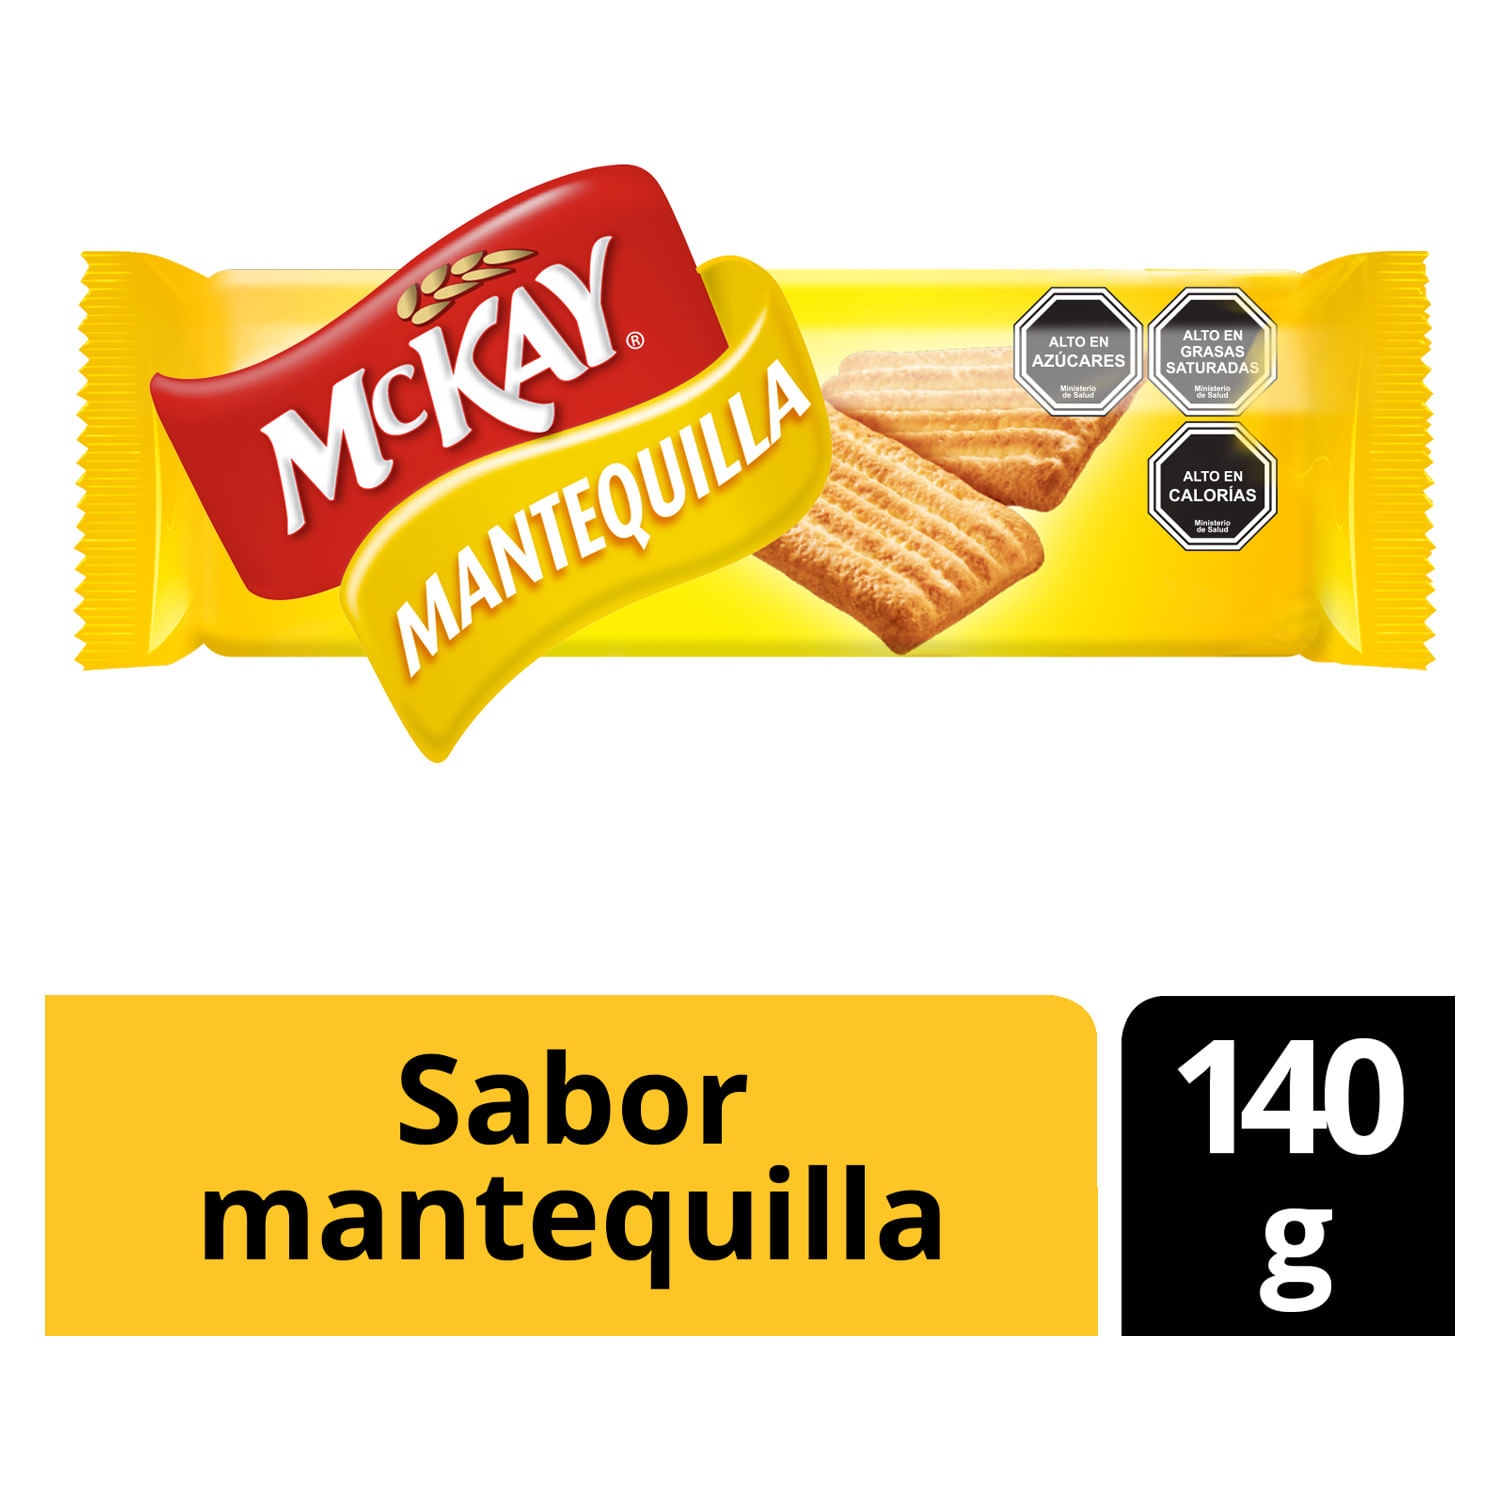 Galletas Mckay Mantequilla 140g